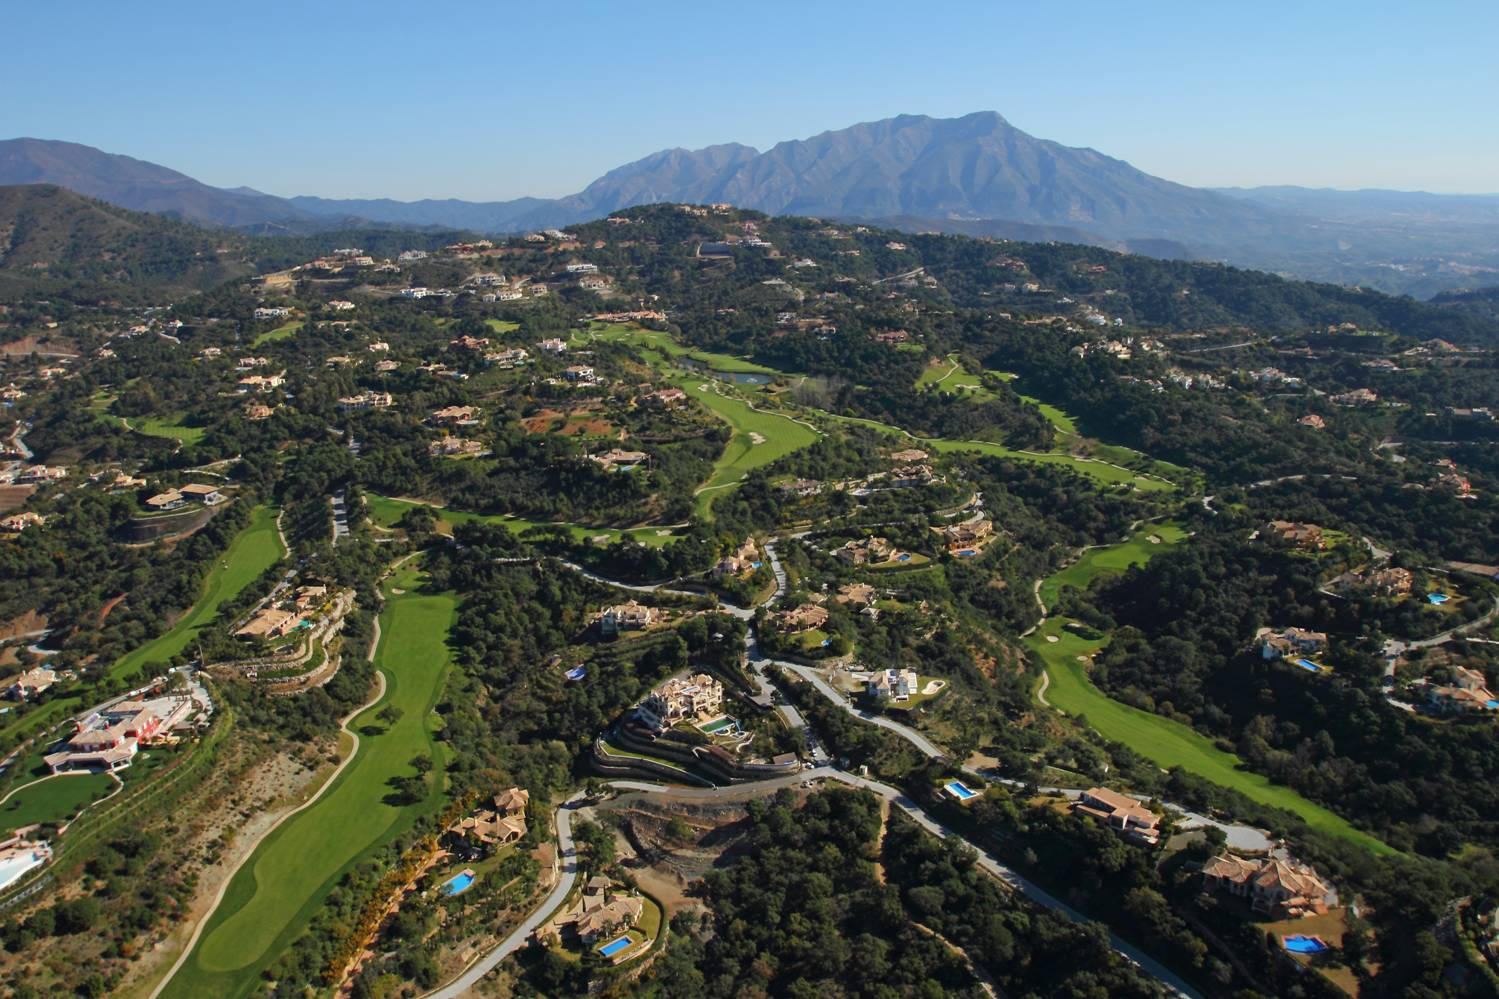 La Zagaleta aerial view